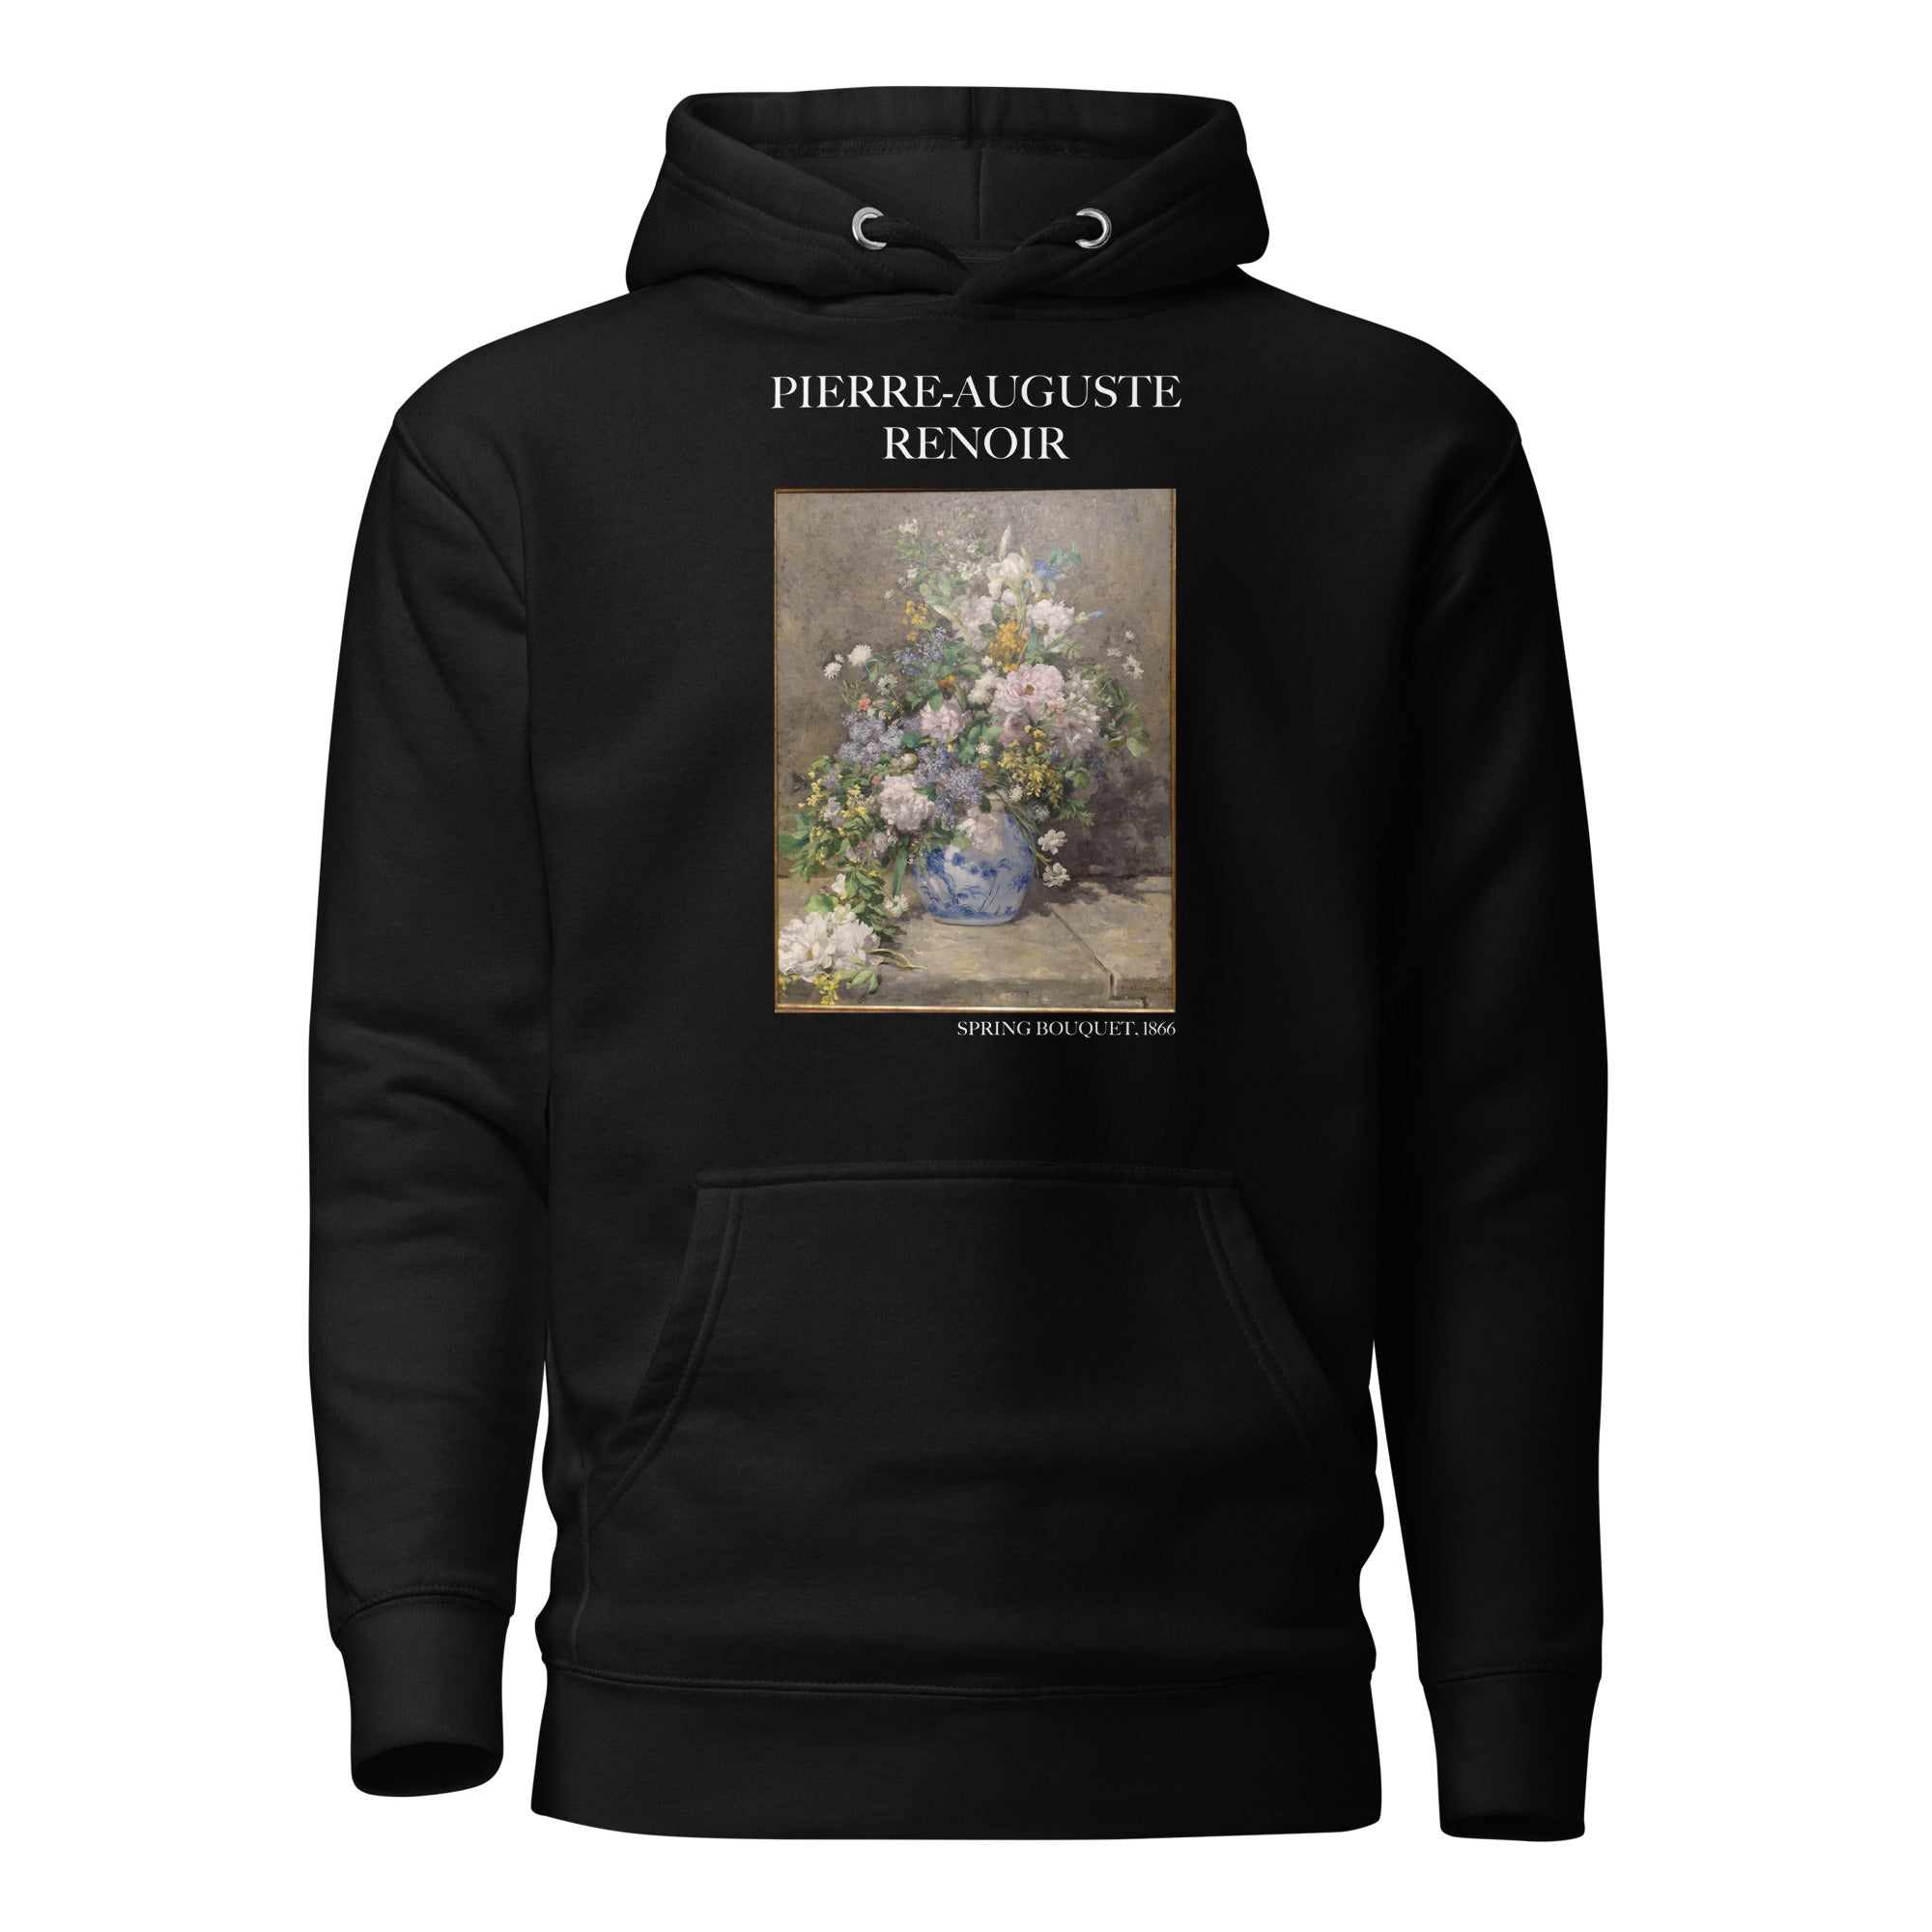 Pierre-Auguste Renoir 'Frühlingsstrauß' Berühmtes Gemälde Hoodie | Unisex Premium Kunst Hoodie